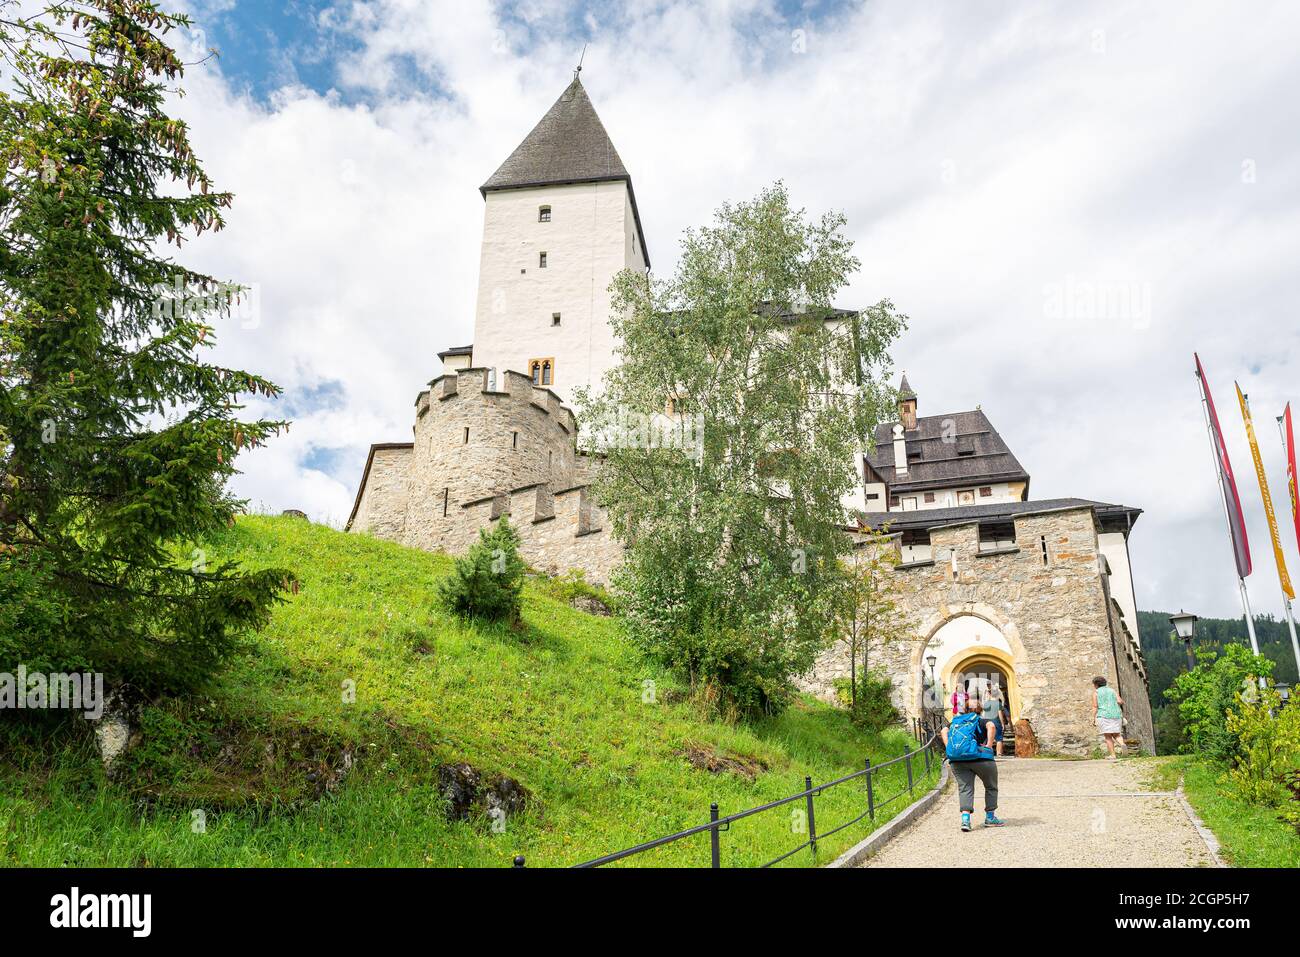 Ingresso al castello (burg) Mauterndorf nello stato di Salzburgerland, Austria. Foto Stock